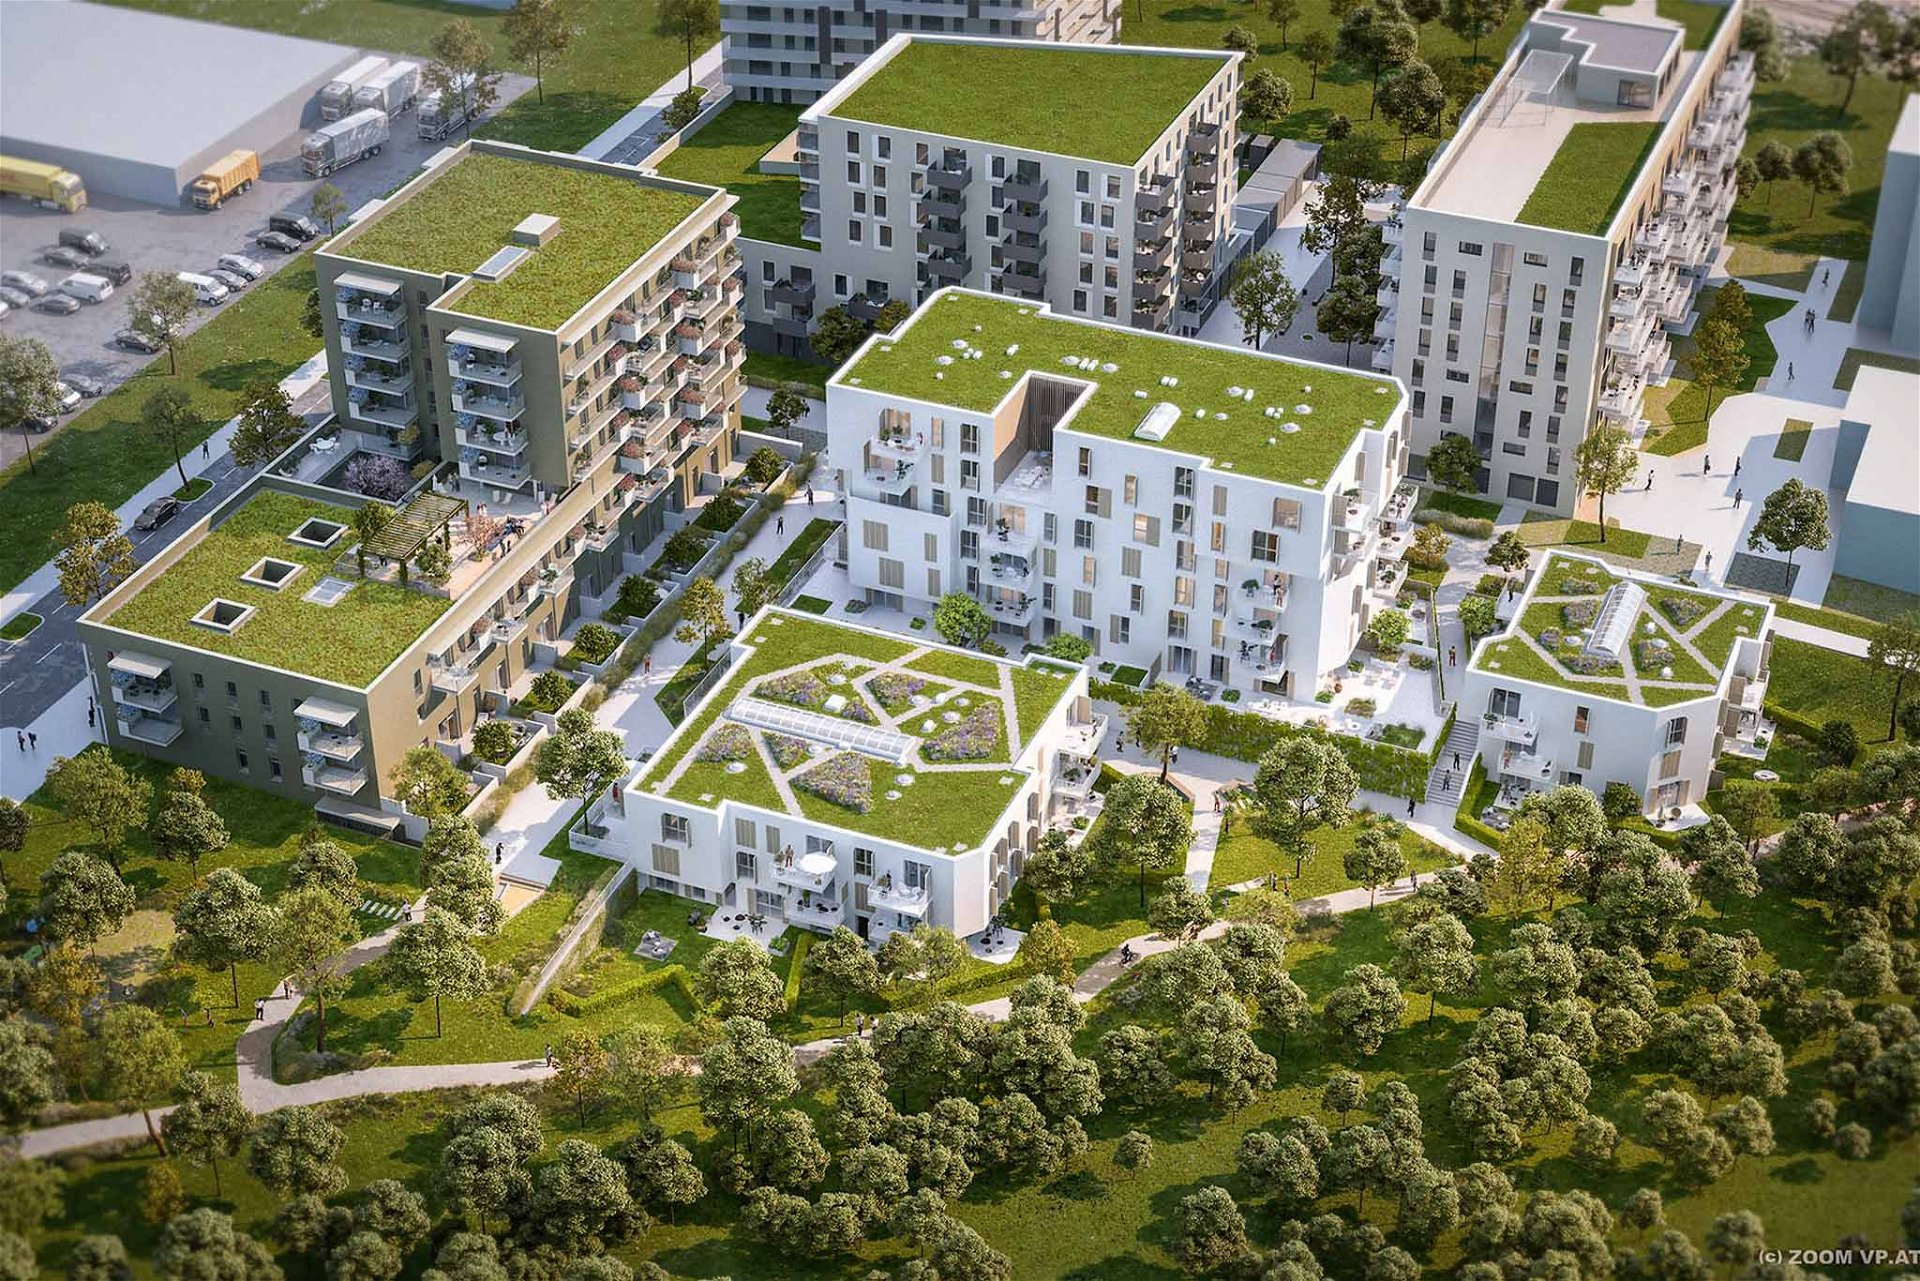 Siemensäcker, Wien 21 Das Gesamtprojekt ist Resultat des 2014 ausgeschriebenen EUROPAN-12-Wettbewerbs. Die slowakischen SLLA Architects haben vorgeschlagen, das 8,5 Hektar große Gebiet, auf dem sich einst bewirtschaftete Ackerflächen sowie die Kfz-Werkstätten von Siemens befunden hatten, mit rund 1.200 Wohnungen zu bebauen und das gesamte Gebiet zu einem öffentlichen Park zu verweben. Entwickelt wird »Am Park« als Kooperationsprojekt von ARE, EGW, Schwarzatal und Sozialbau. ampark.wien, slla.net, are.at, egw.at, schwarzatal.at, sozialbau.at